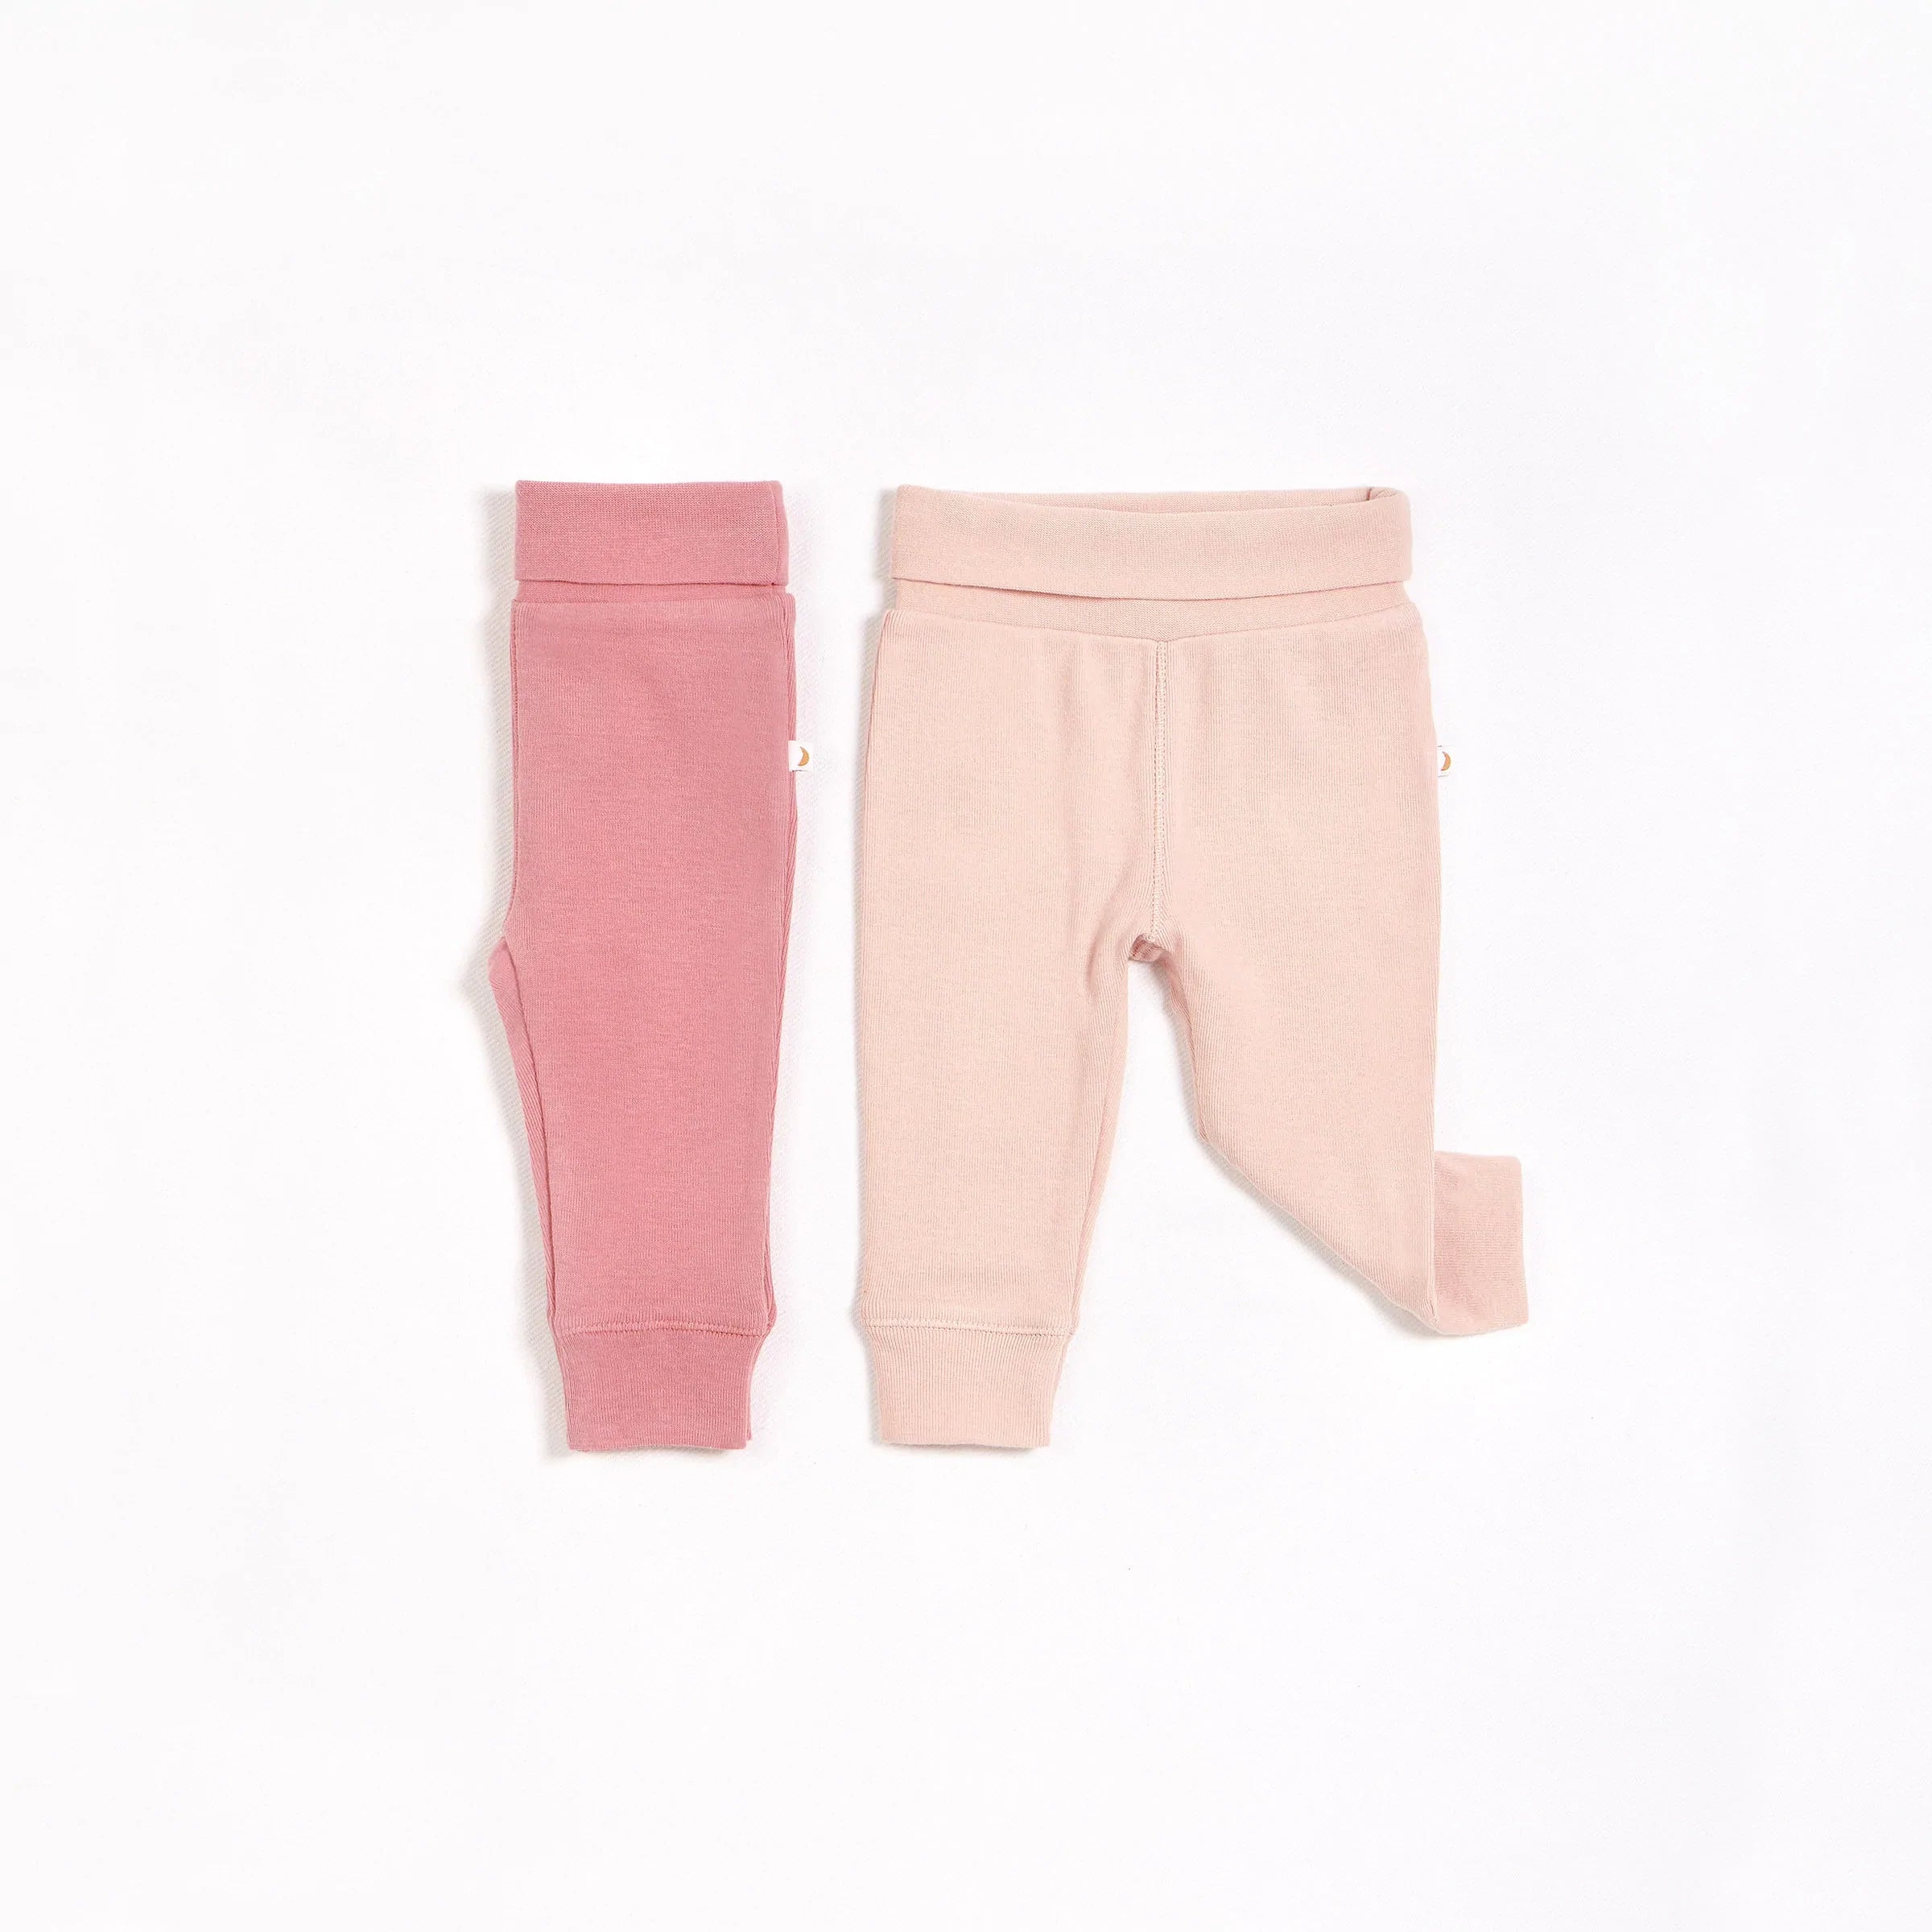 Ensemble de pantalons rose pâle et rose (2 pcs)